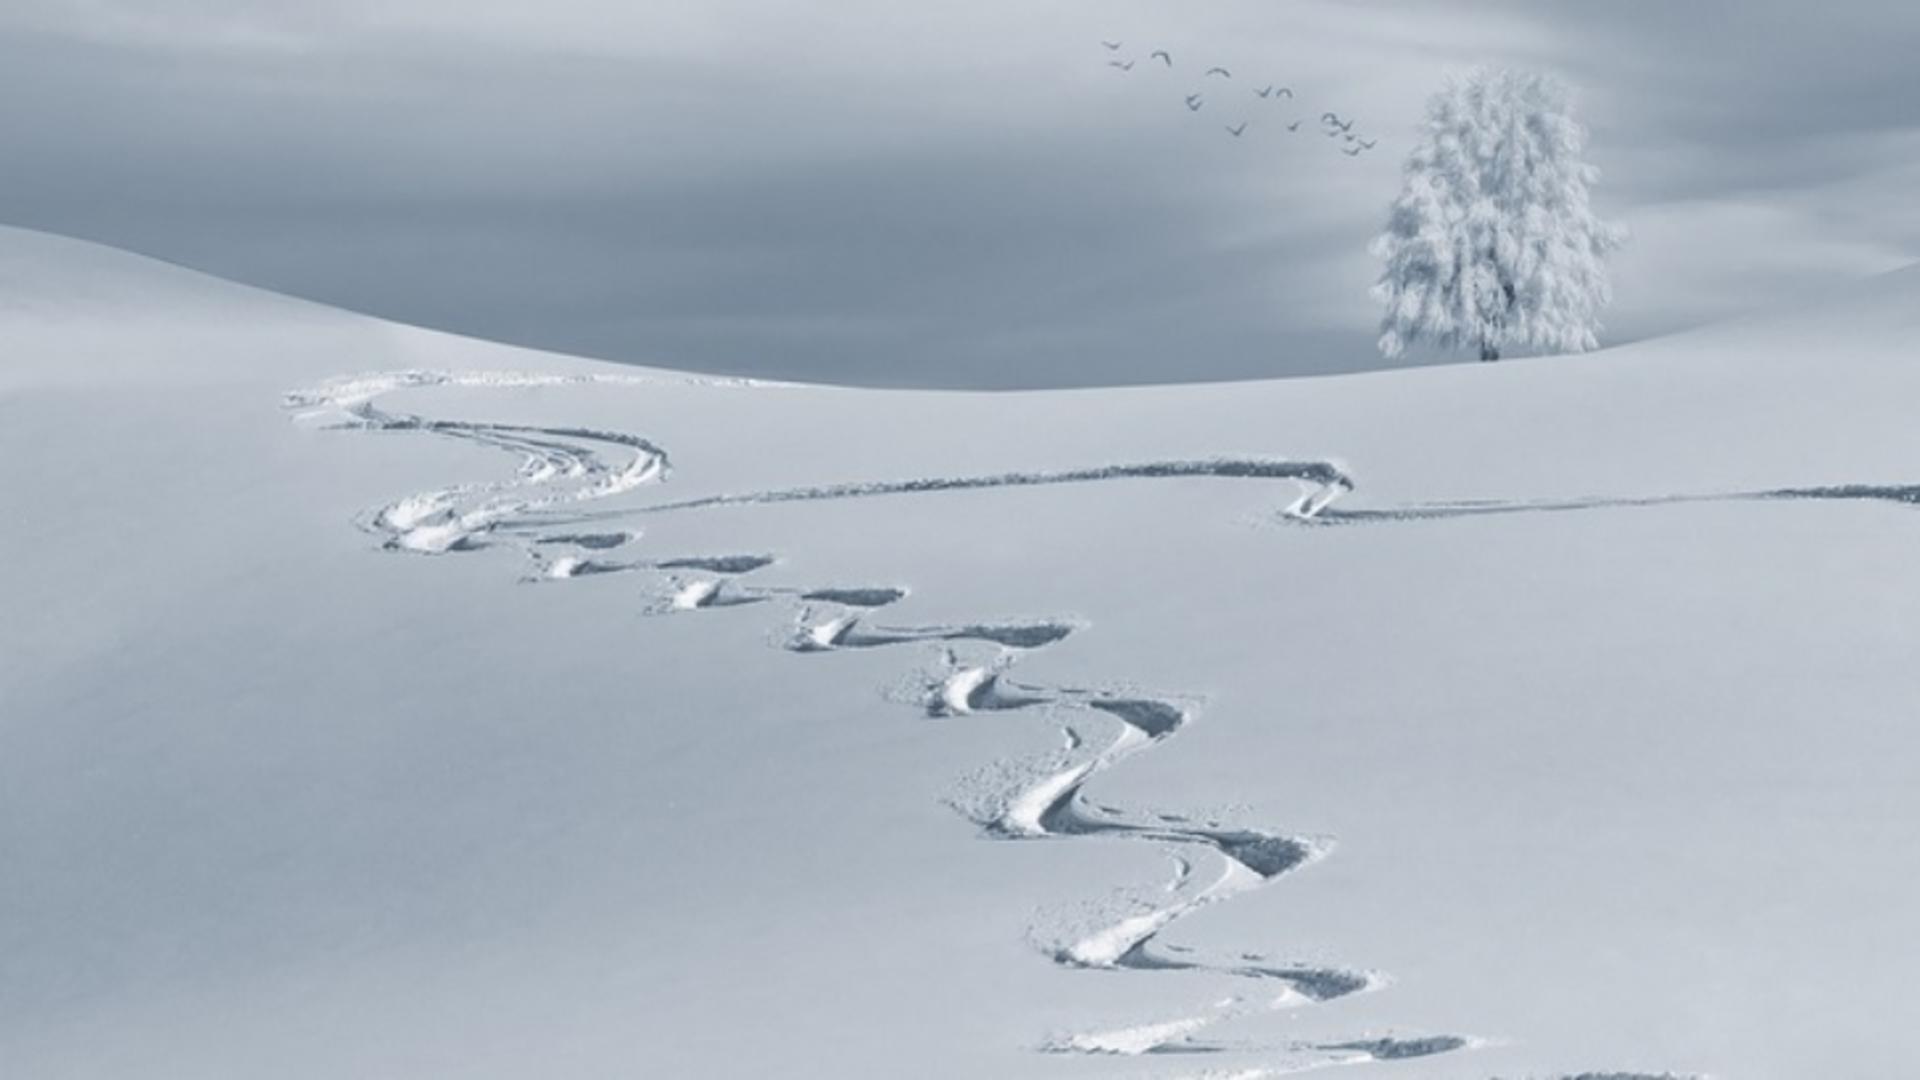 Zăpada - imagine de arhivă